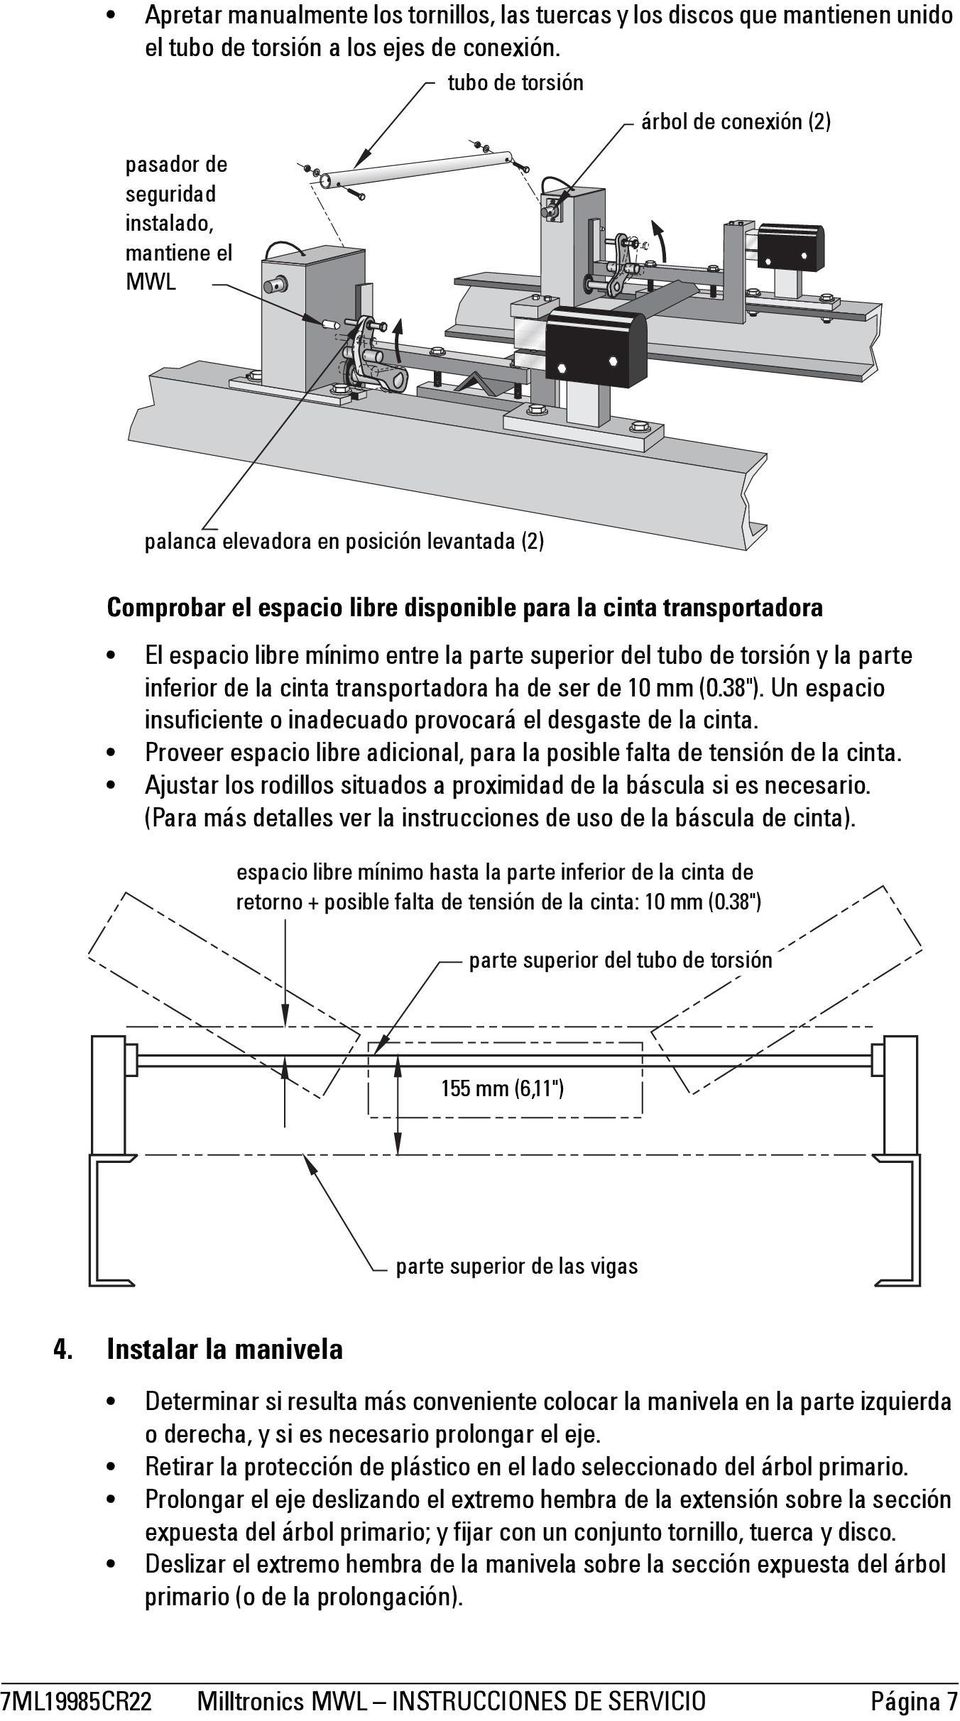 espacio libre mínimo entre la parte superior del tubo de torsión y la parte inferior de la cinta transportadora ha de ser de 10 mm (0.38").